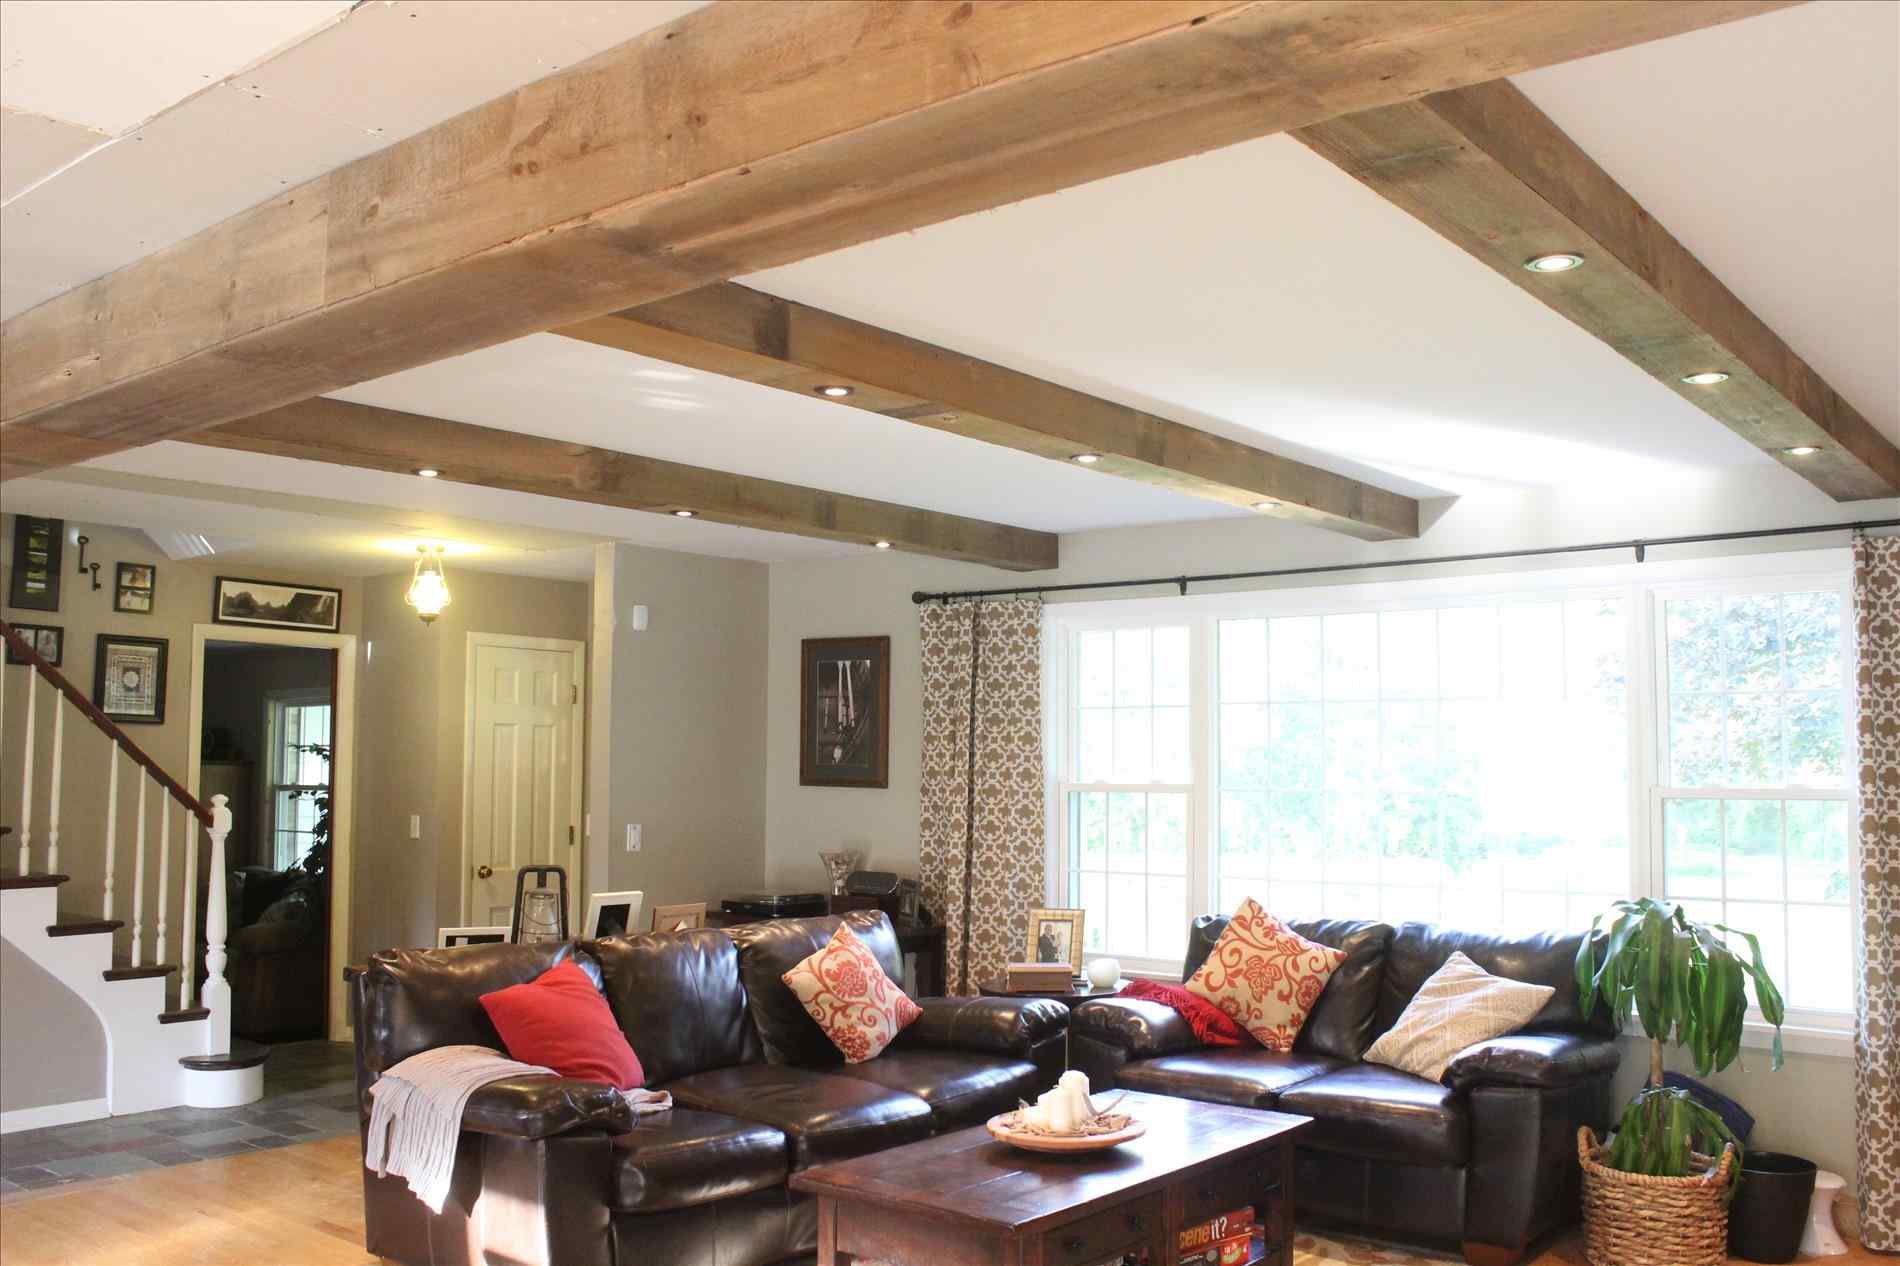 Натяжной потолок в деревянном доме (39 фото): плюсы и минусы потолочных покрытий в доме с балками, отзывы владельцев